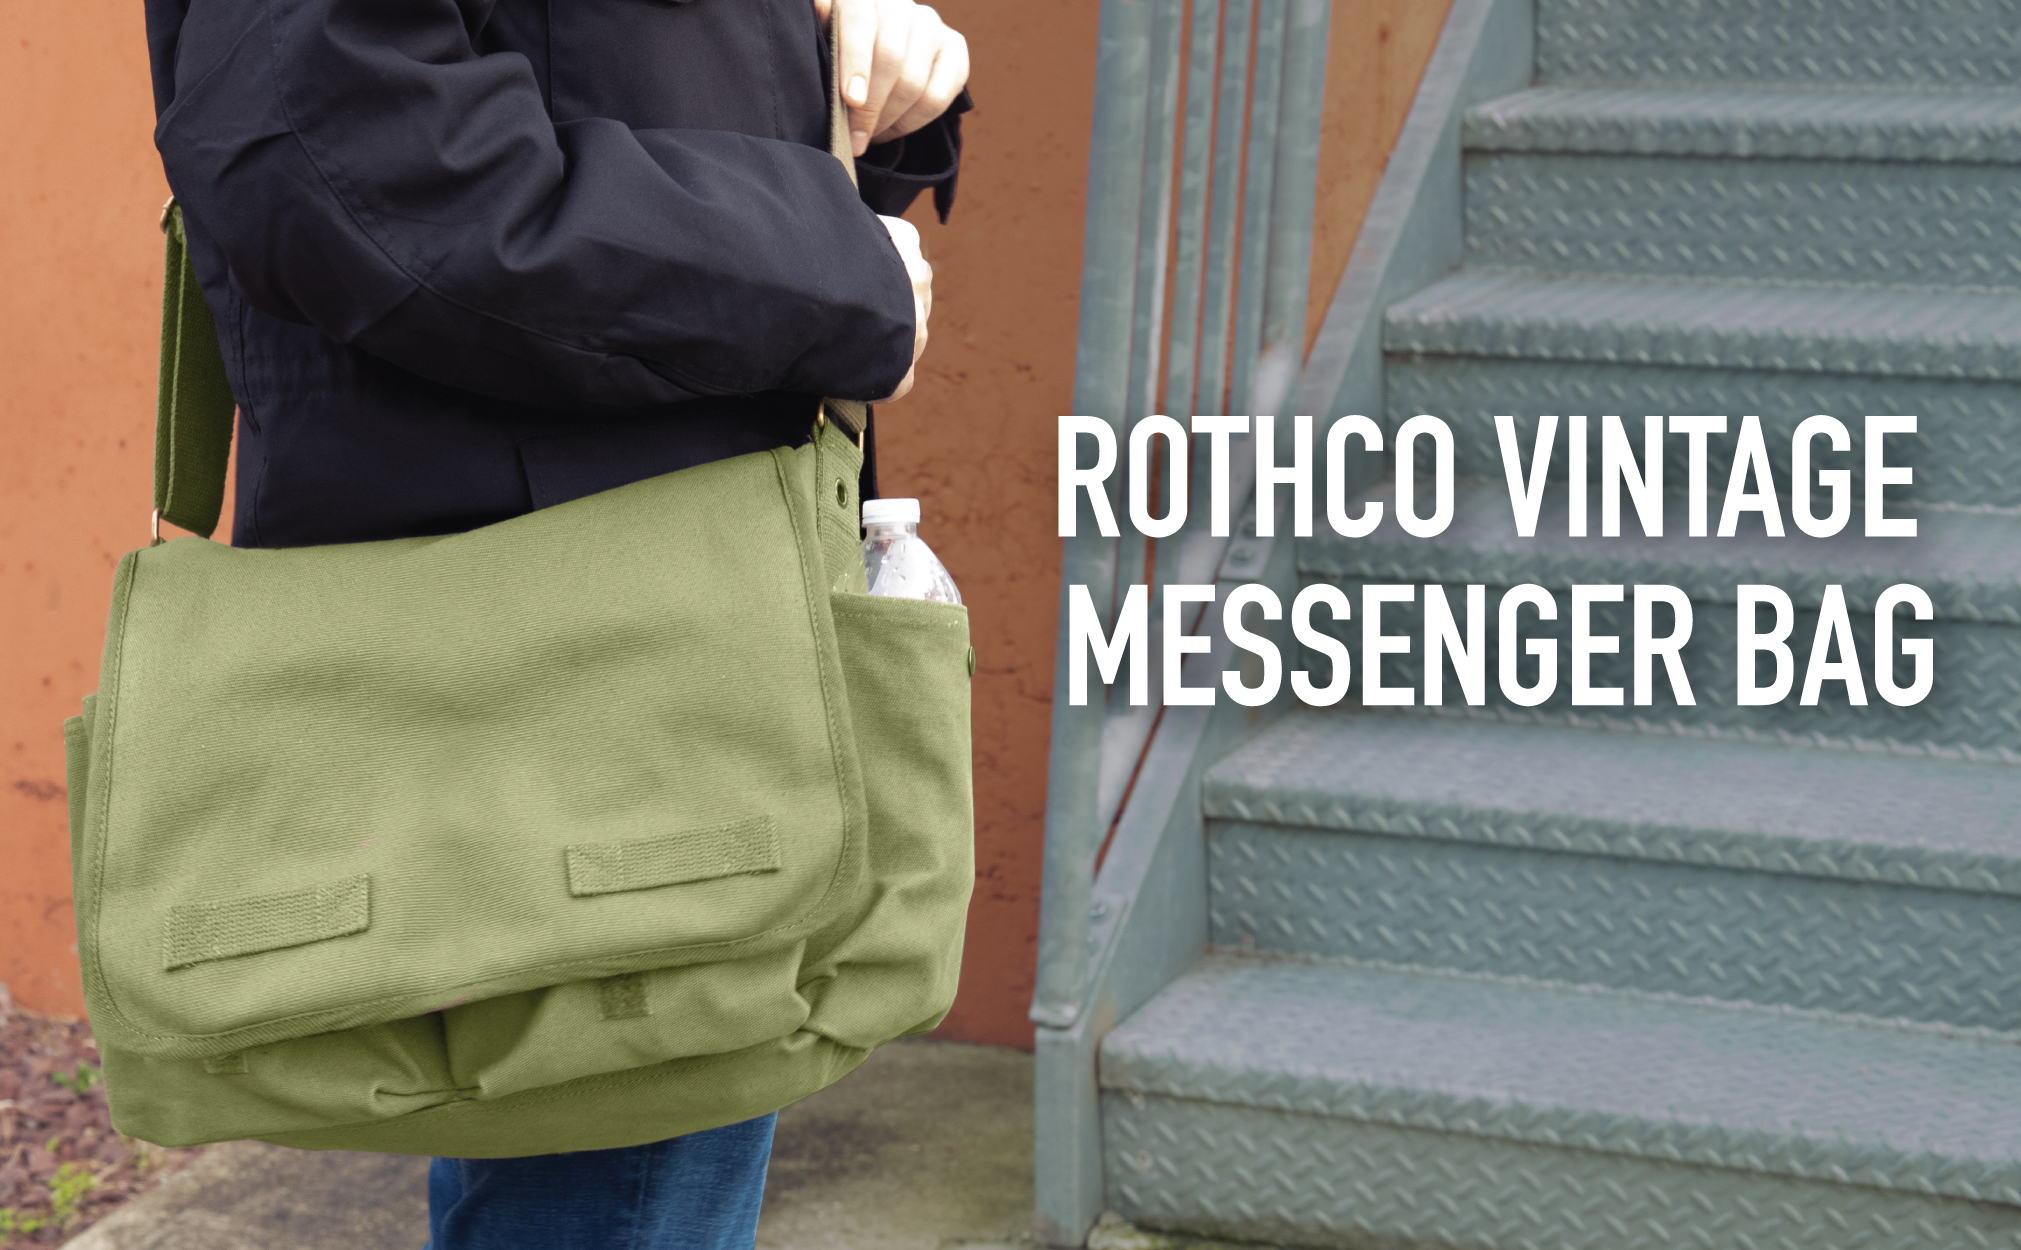 Rothco Classic Canvas Messenger Bag, Khaki - image 3 of 3